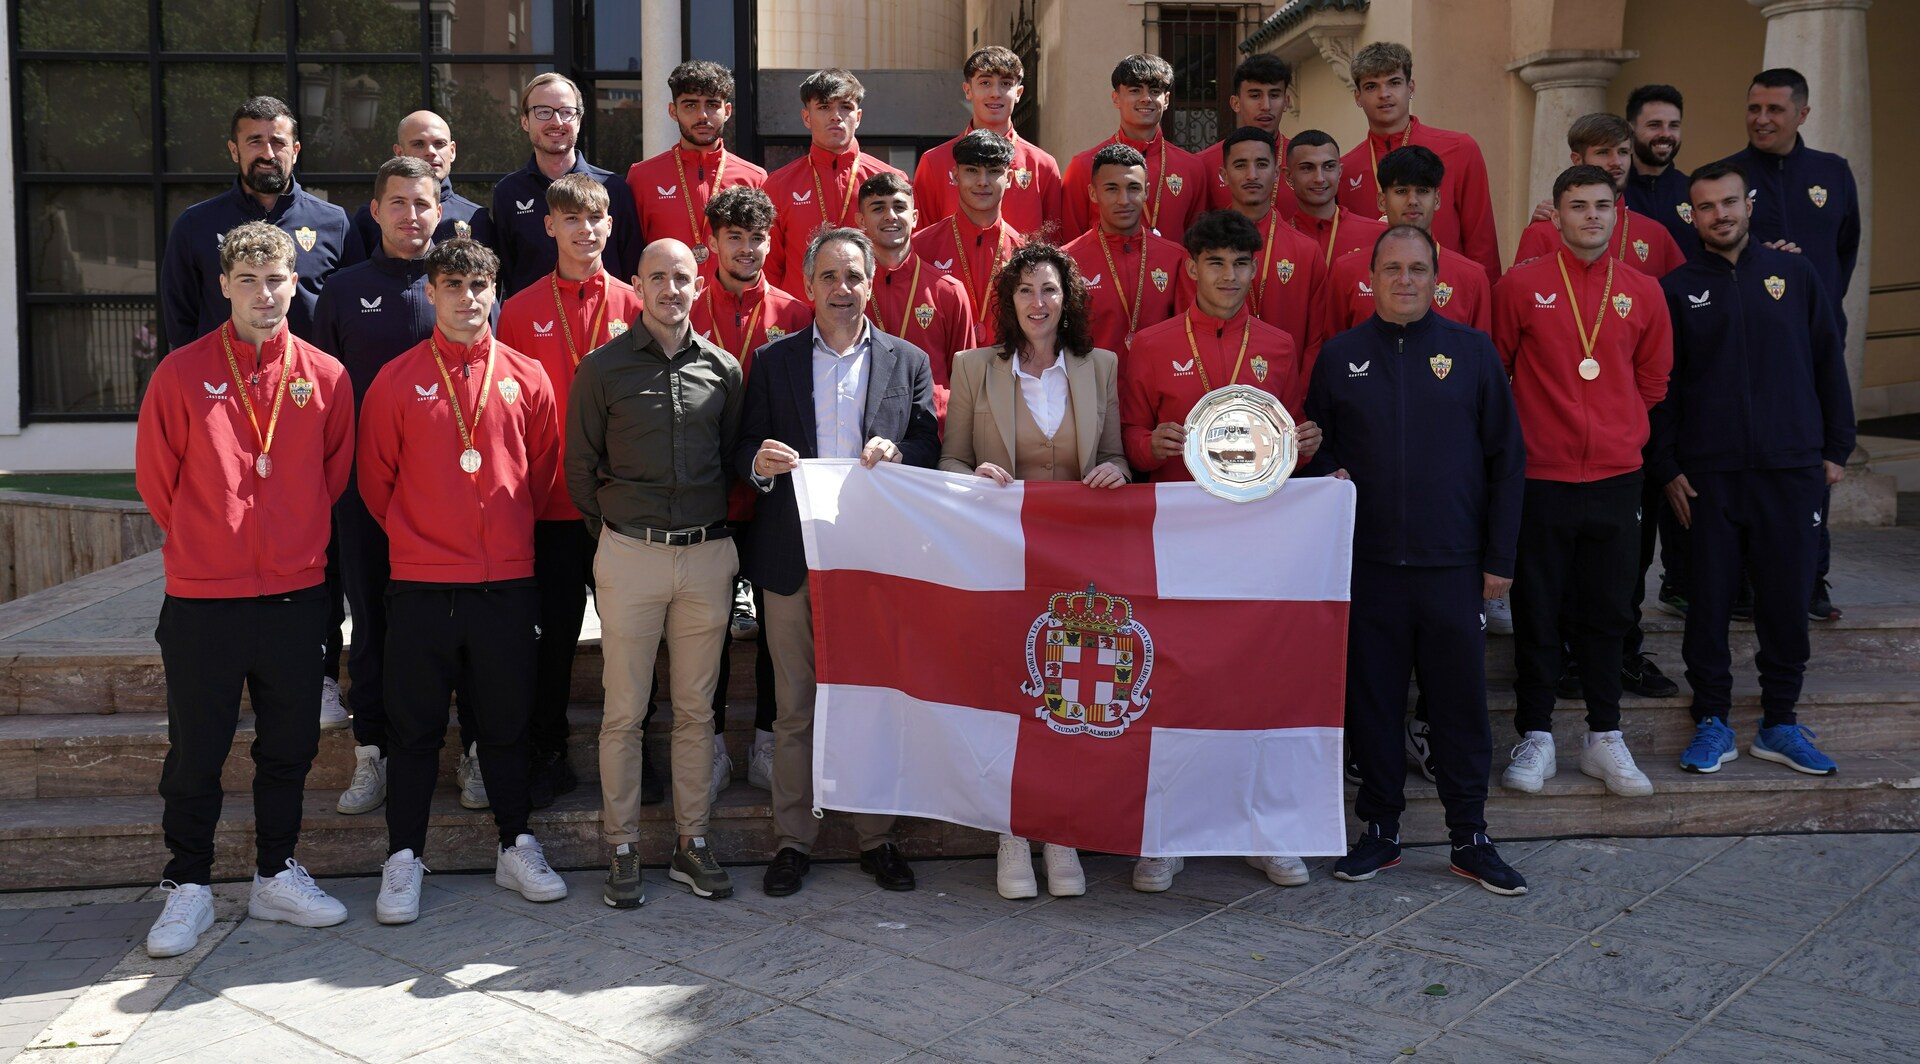 Recepción de la alcaldesa de Almería al equipo juvenil A del club